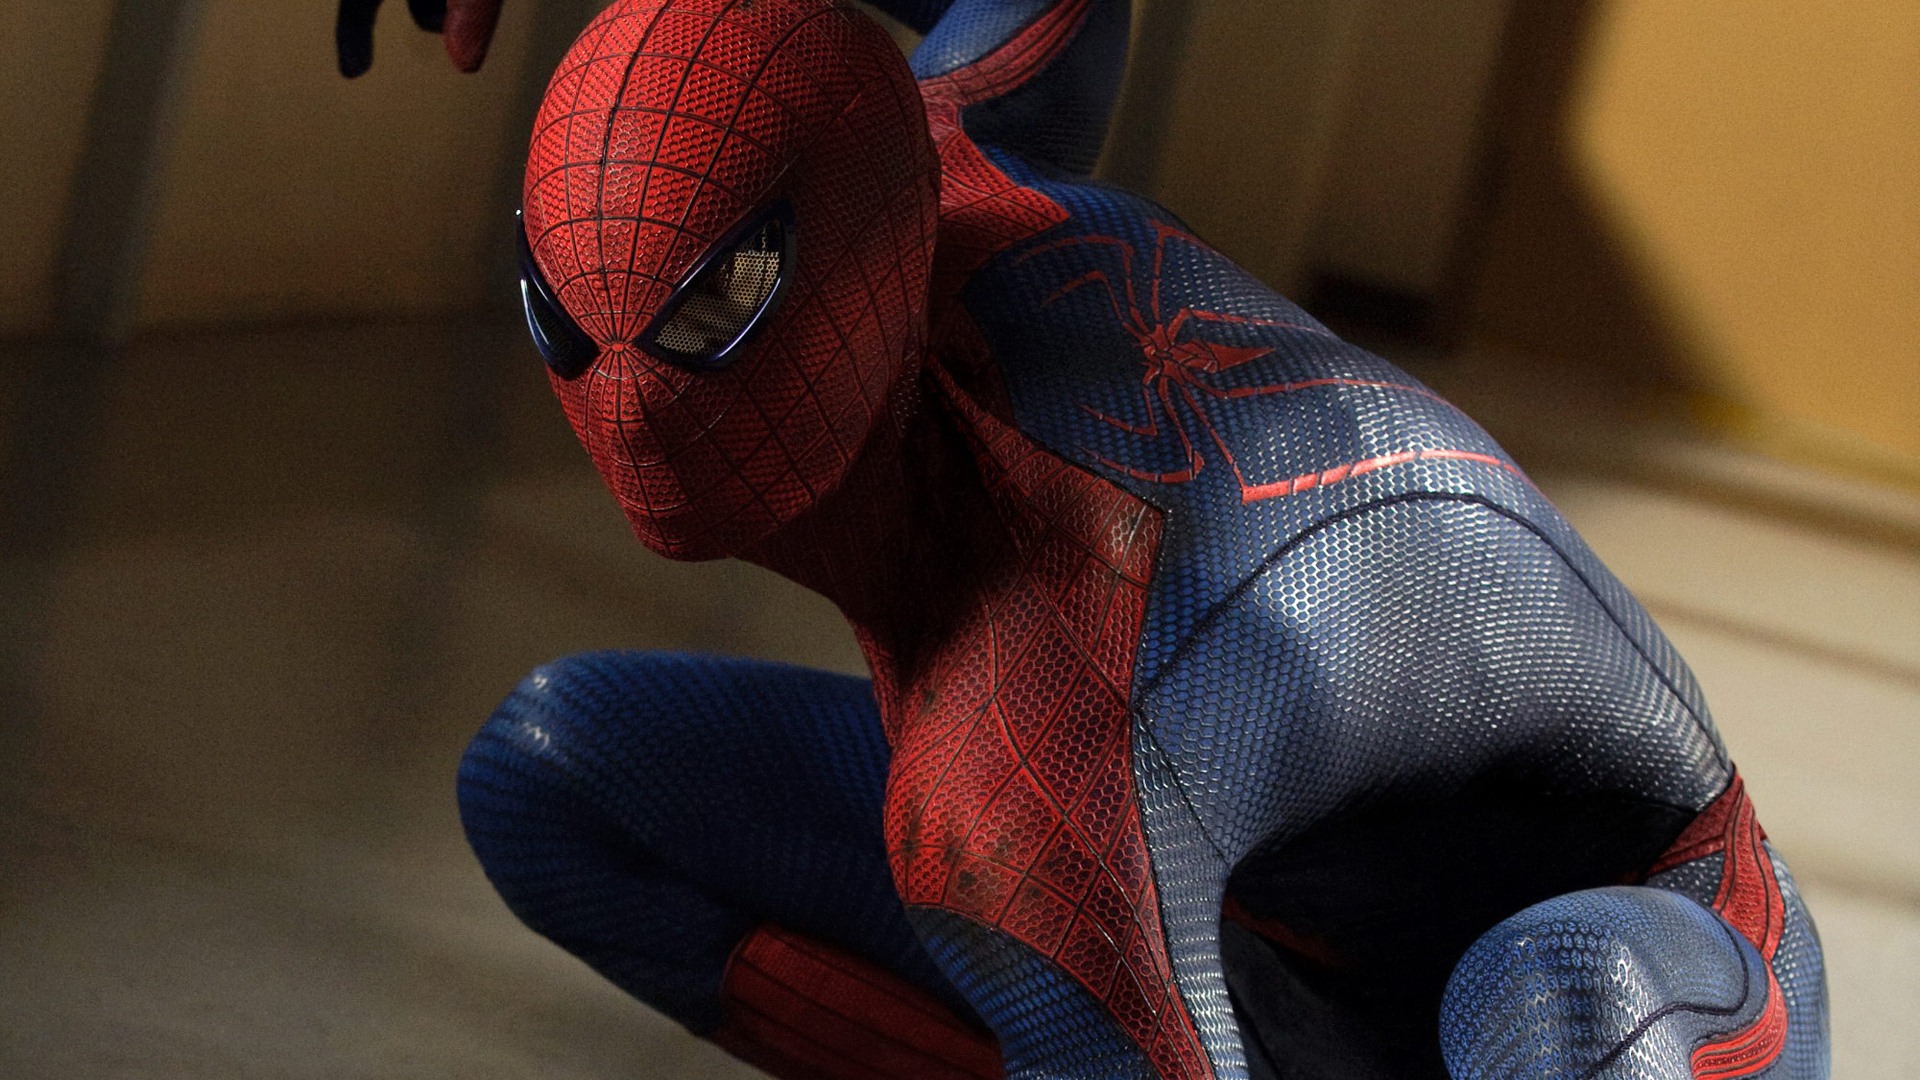 The Amazing Spider-Man 2012 惊奇蜘蛛侠2012 壁纸专辑3 - 1920x1080